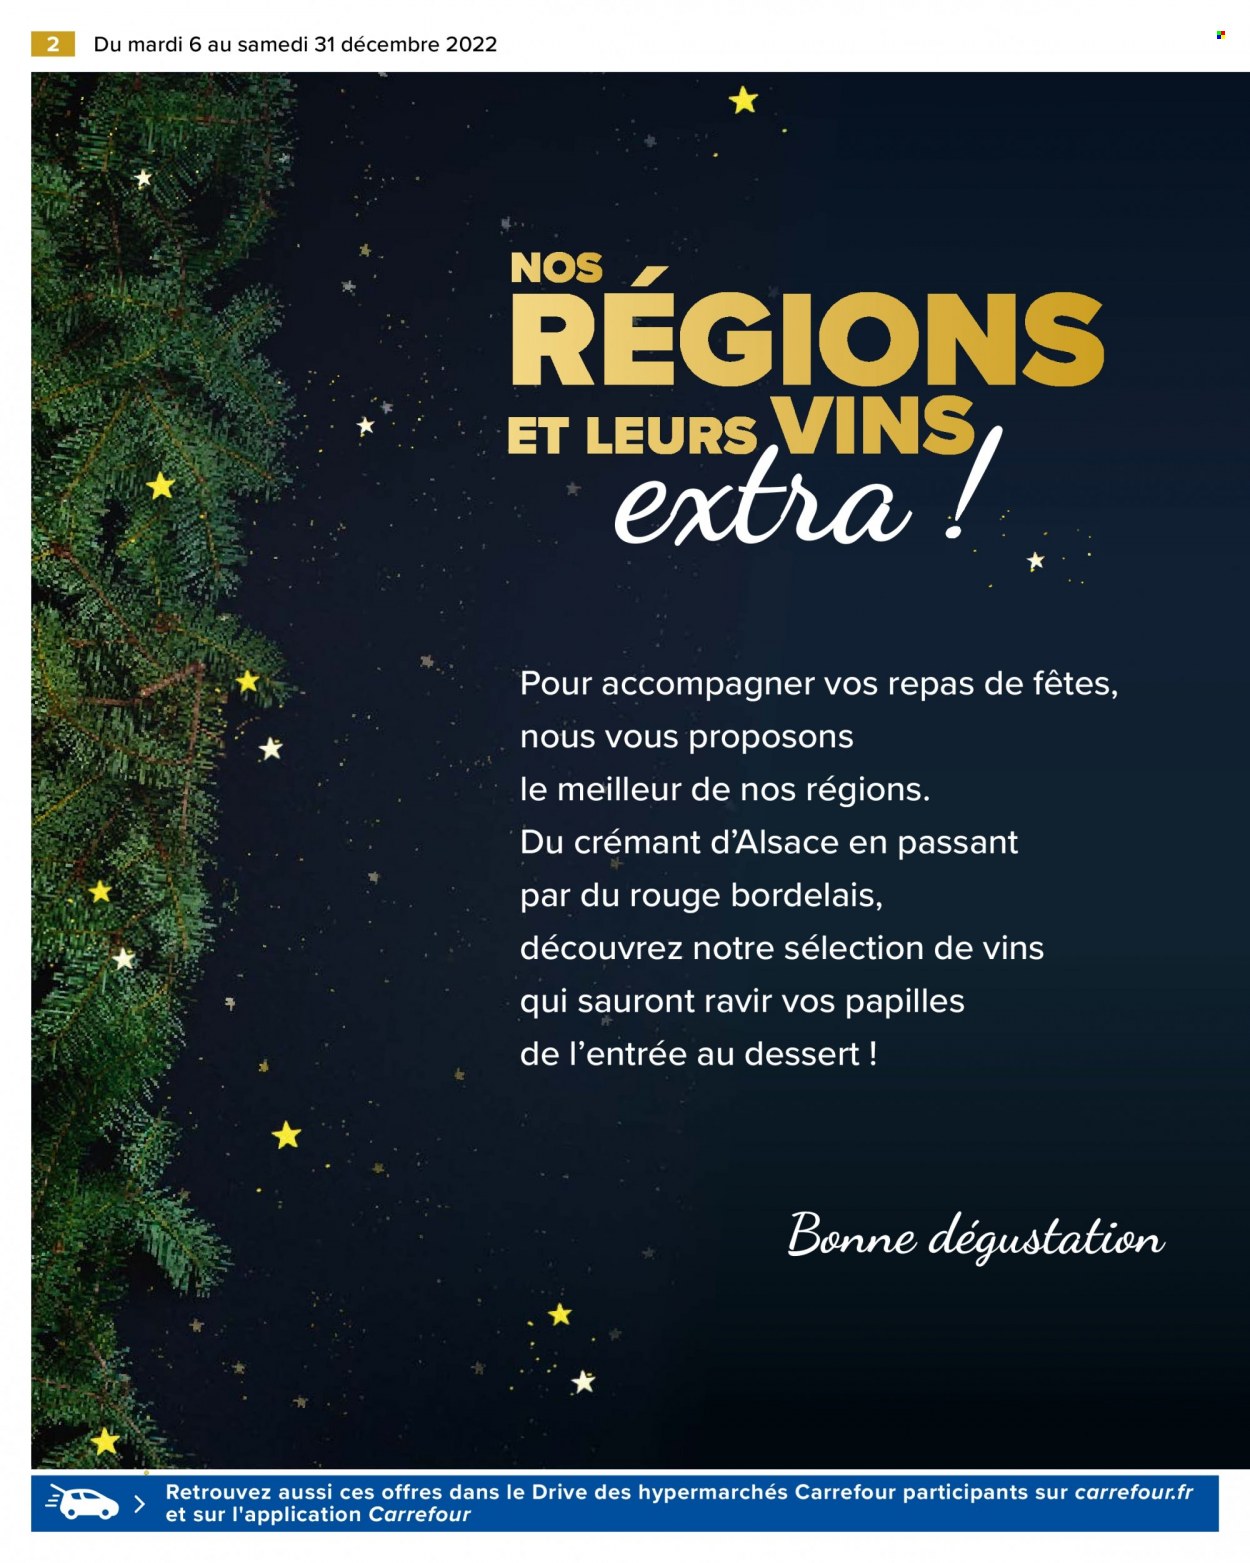 thumbnail - Catalogue Carrefour Hypermarchés - 06/12/2022 - 31/12/2022 - Produits soldés - Crémant d’Alsace, champagne, vin. Page 2.